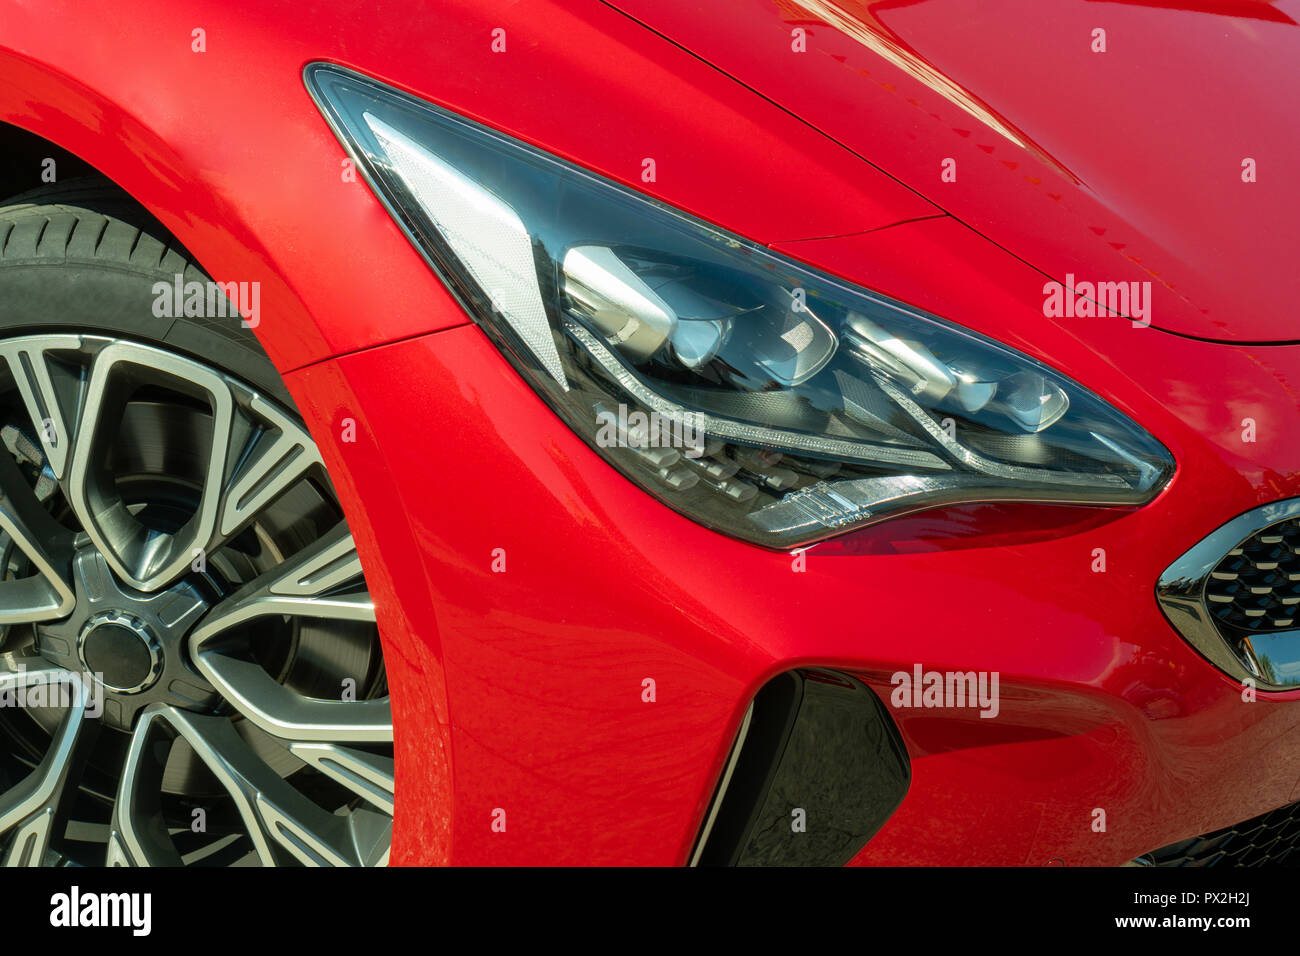 Rotes Auto Auf Dem Hintergrund Der Stadt Stilvolles Modernes Helles Bild Des Autos Fur Design Losungen Stockfotografie Alamy